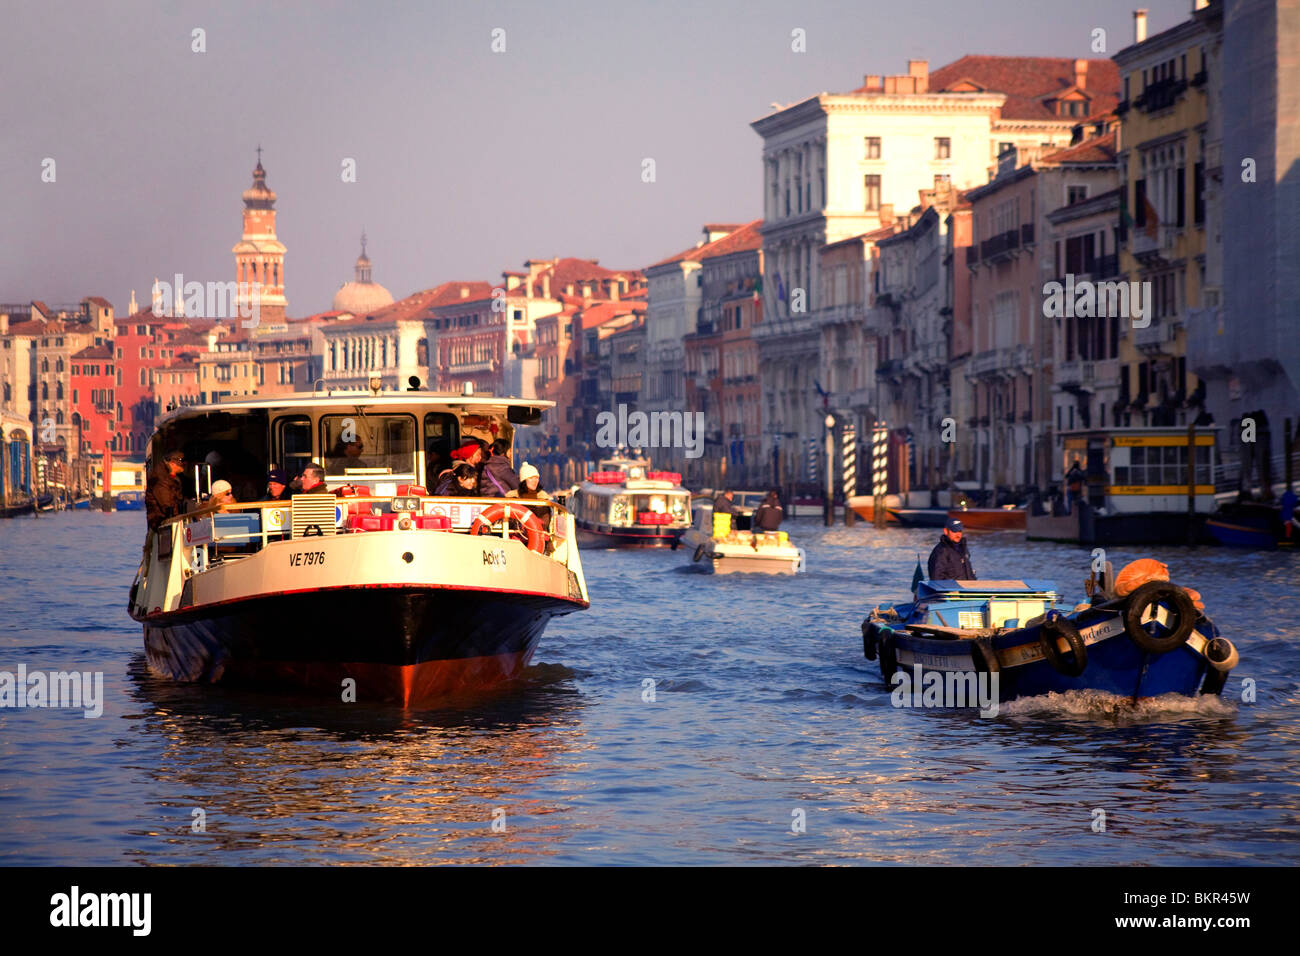 Italien, Veneto, Venedig; Eine Vaporetto, neben einem kleinen Boot die Güter in der venezianischen Lagune, auf der Gran Canal Stockfoto